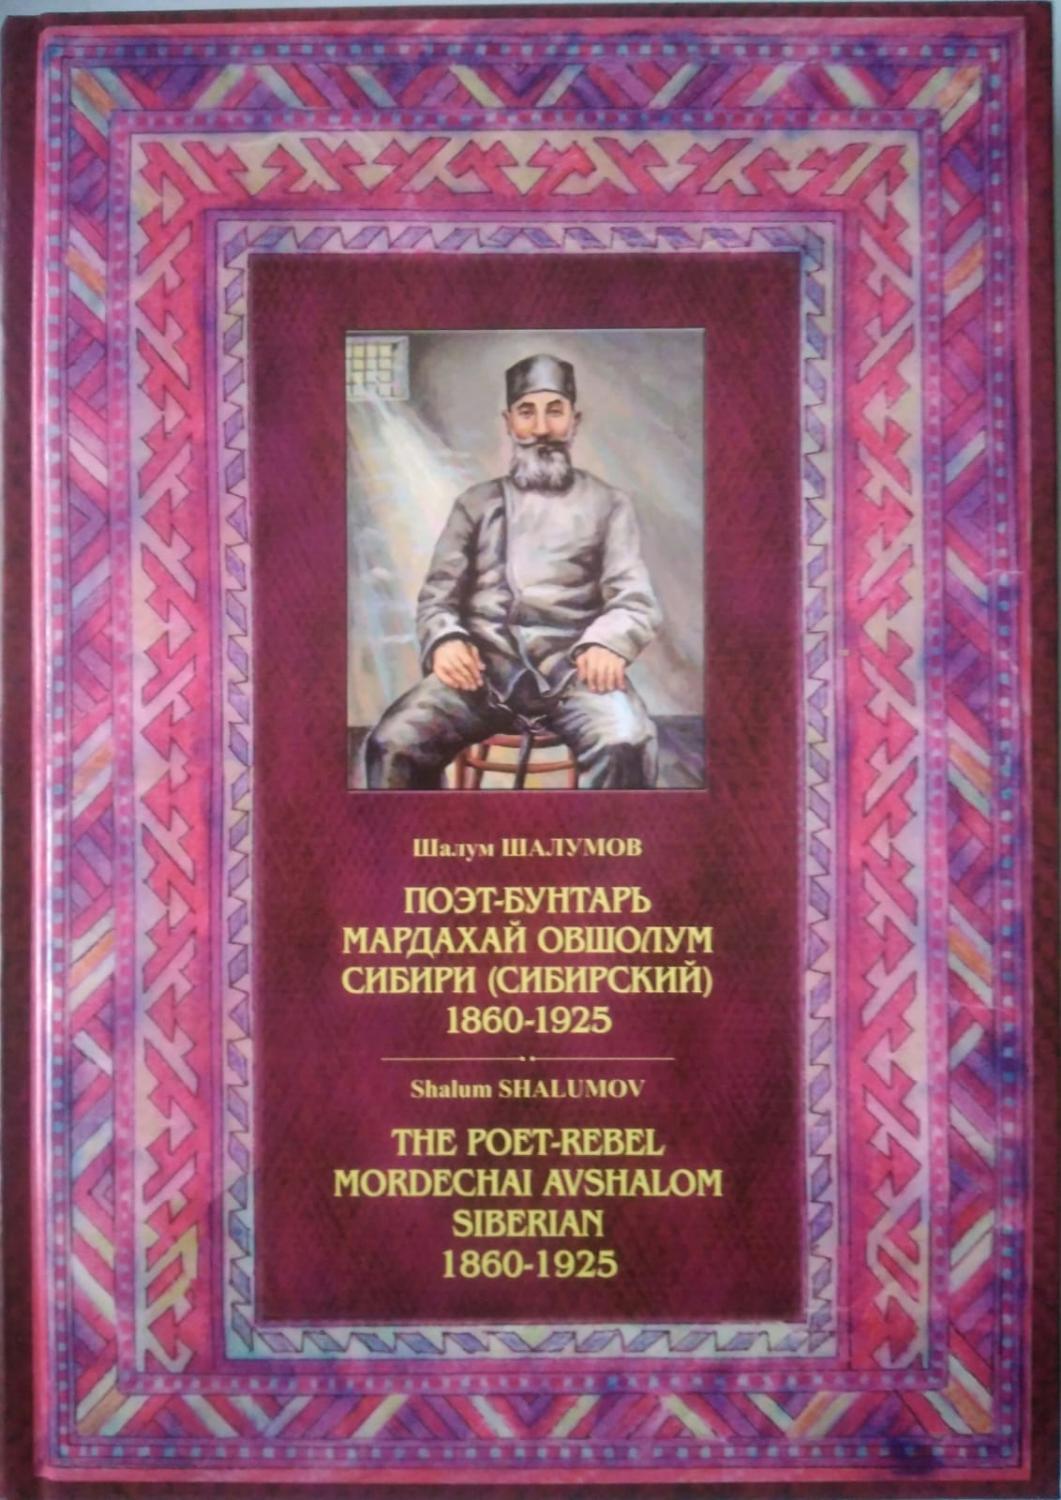 Поэт-бунтарь Овшолум Мардахай сибири (Сибирский) 1960-1925.